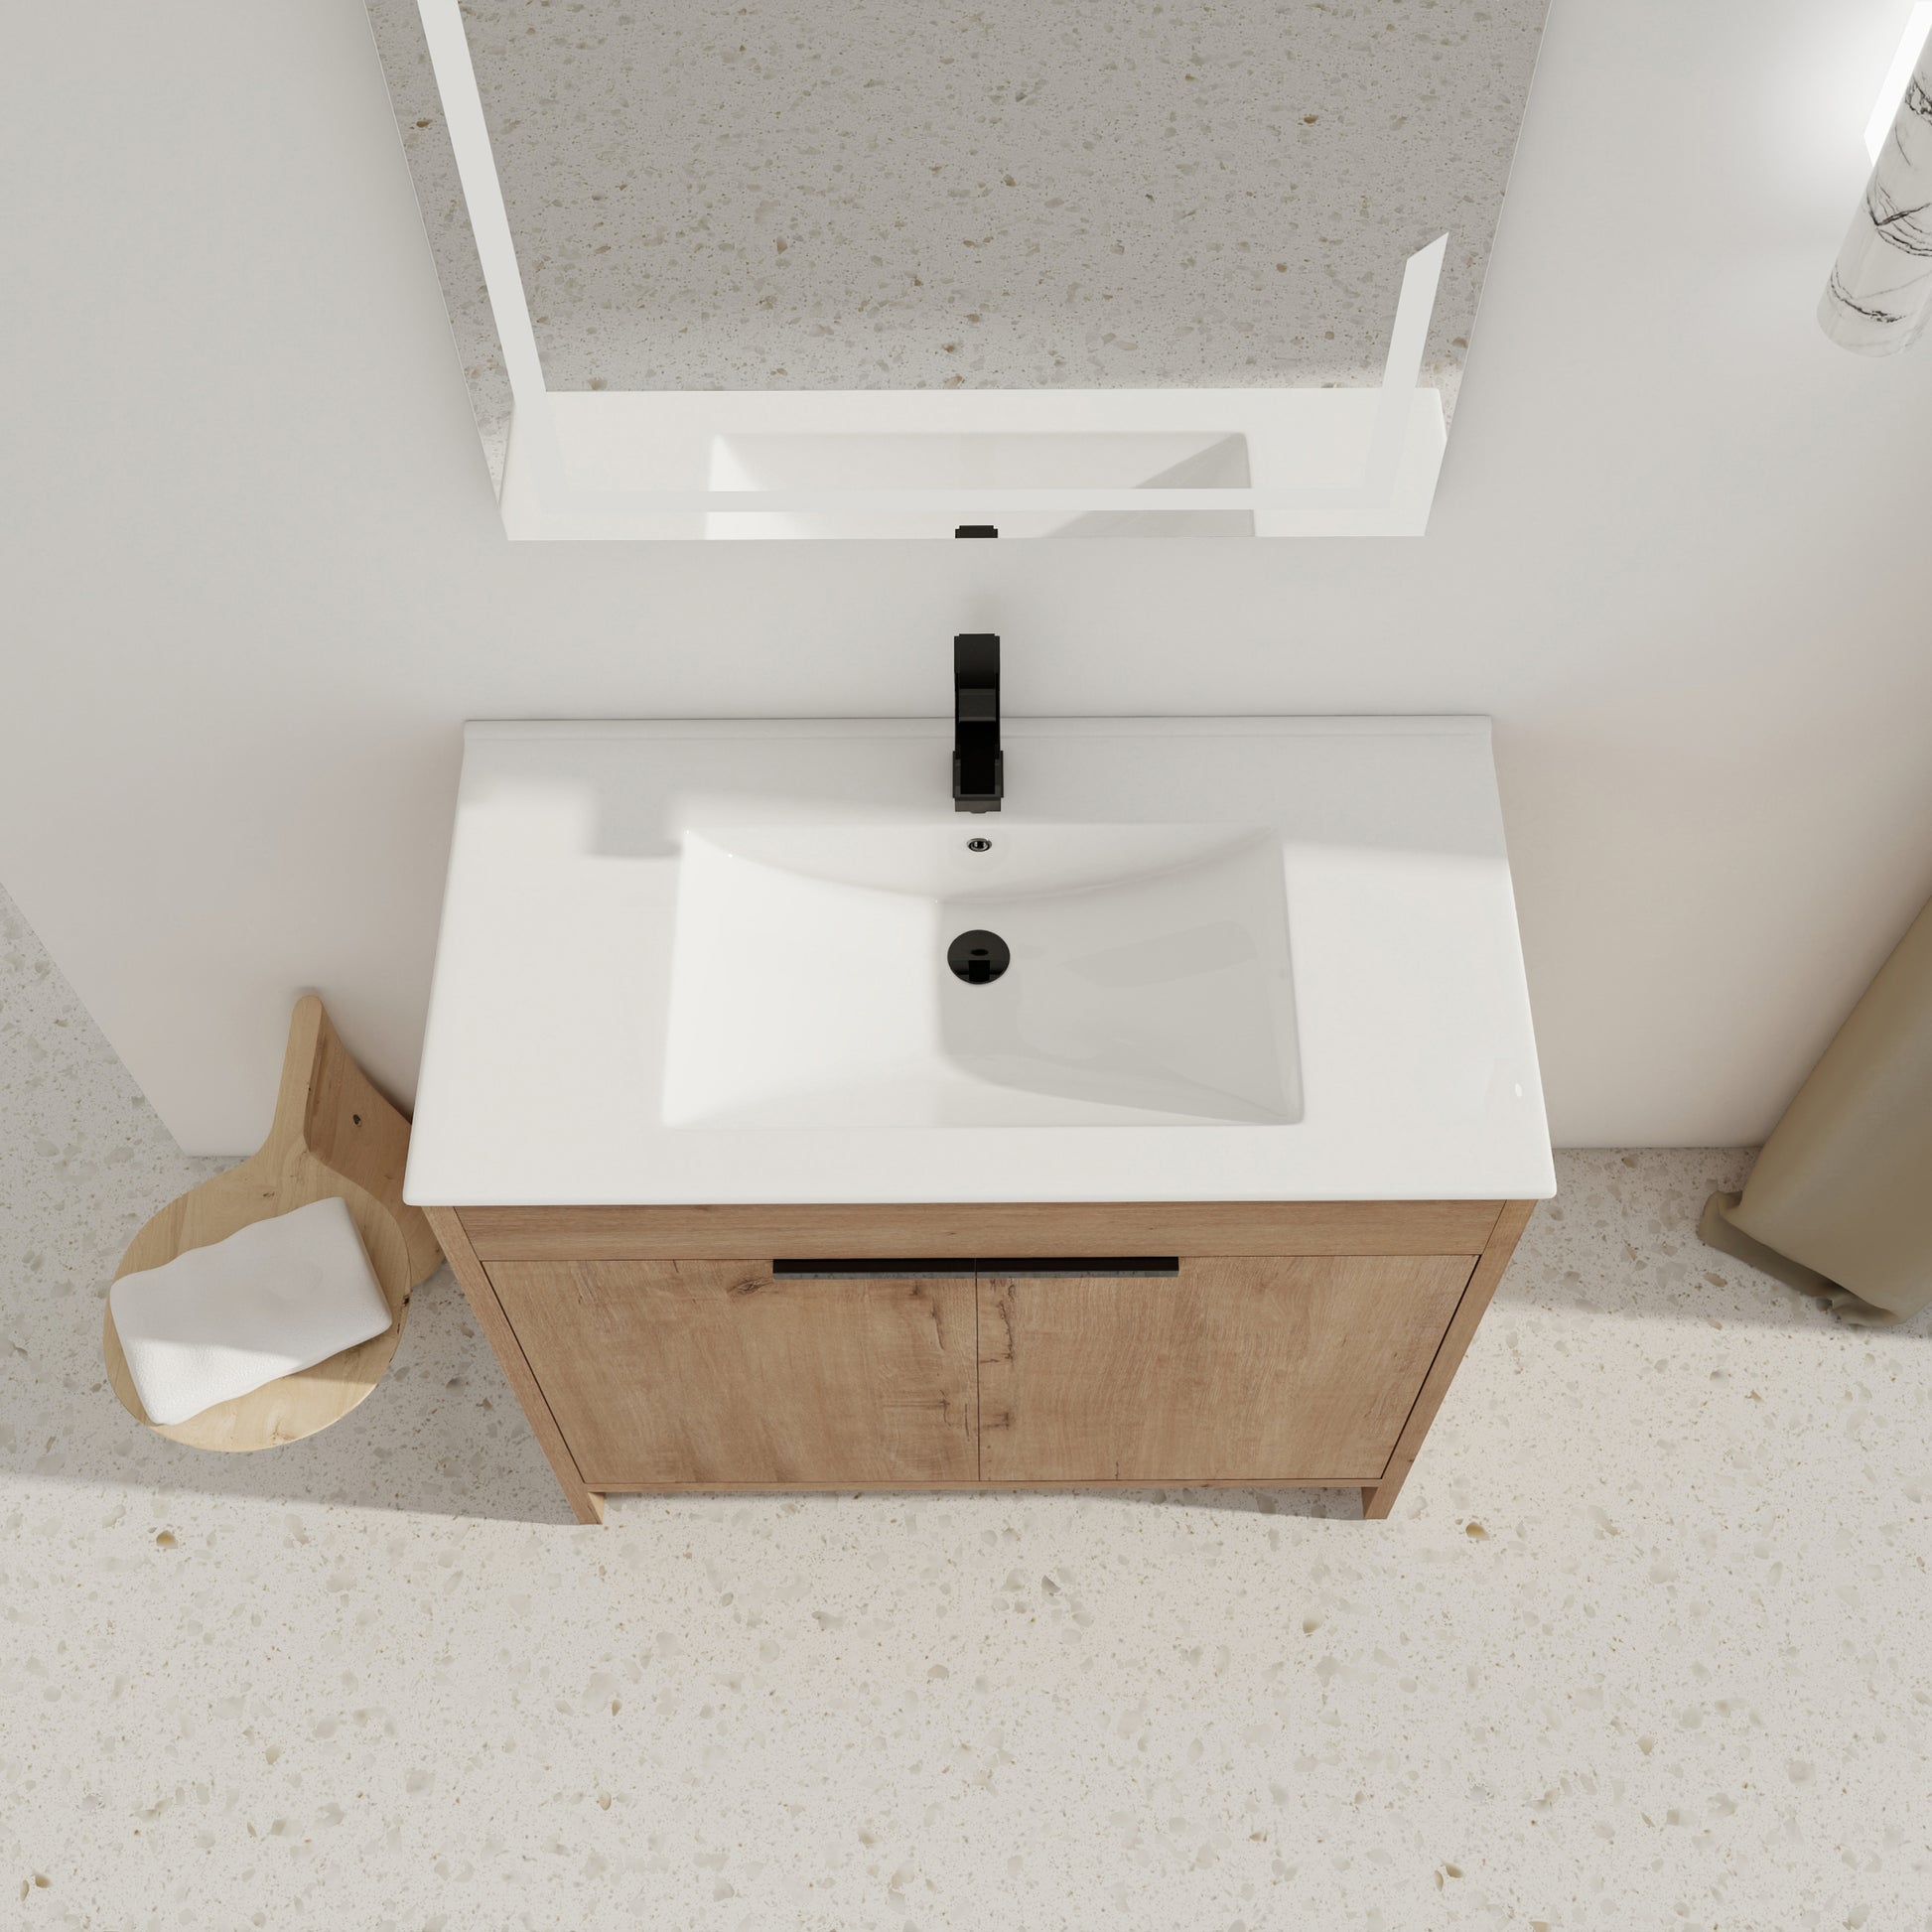 36" Freestanding Bathroom Vanity with White Ceramic imitative